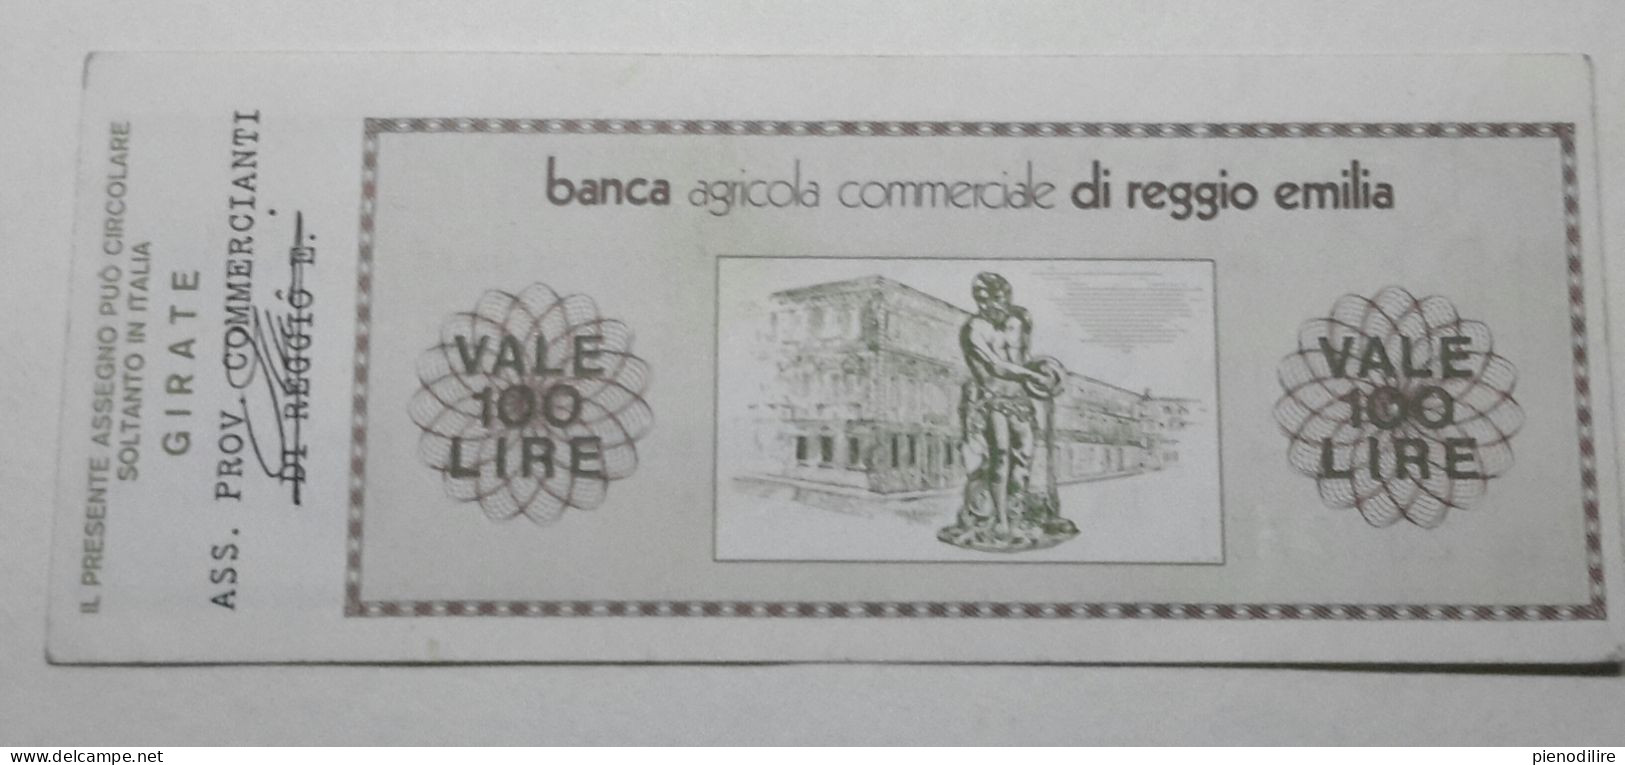 100 LIRE 1.9.1976 BANCA AGRICOLA COMMERCIALE REGGIO EMILIA (A.41) - [10] Checks And Mini-checks